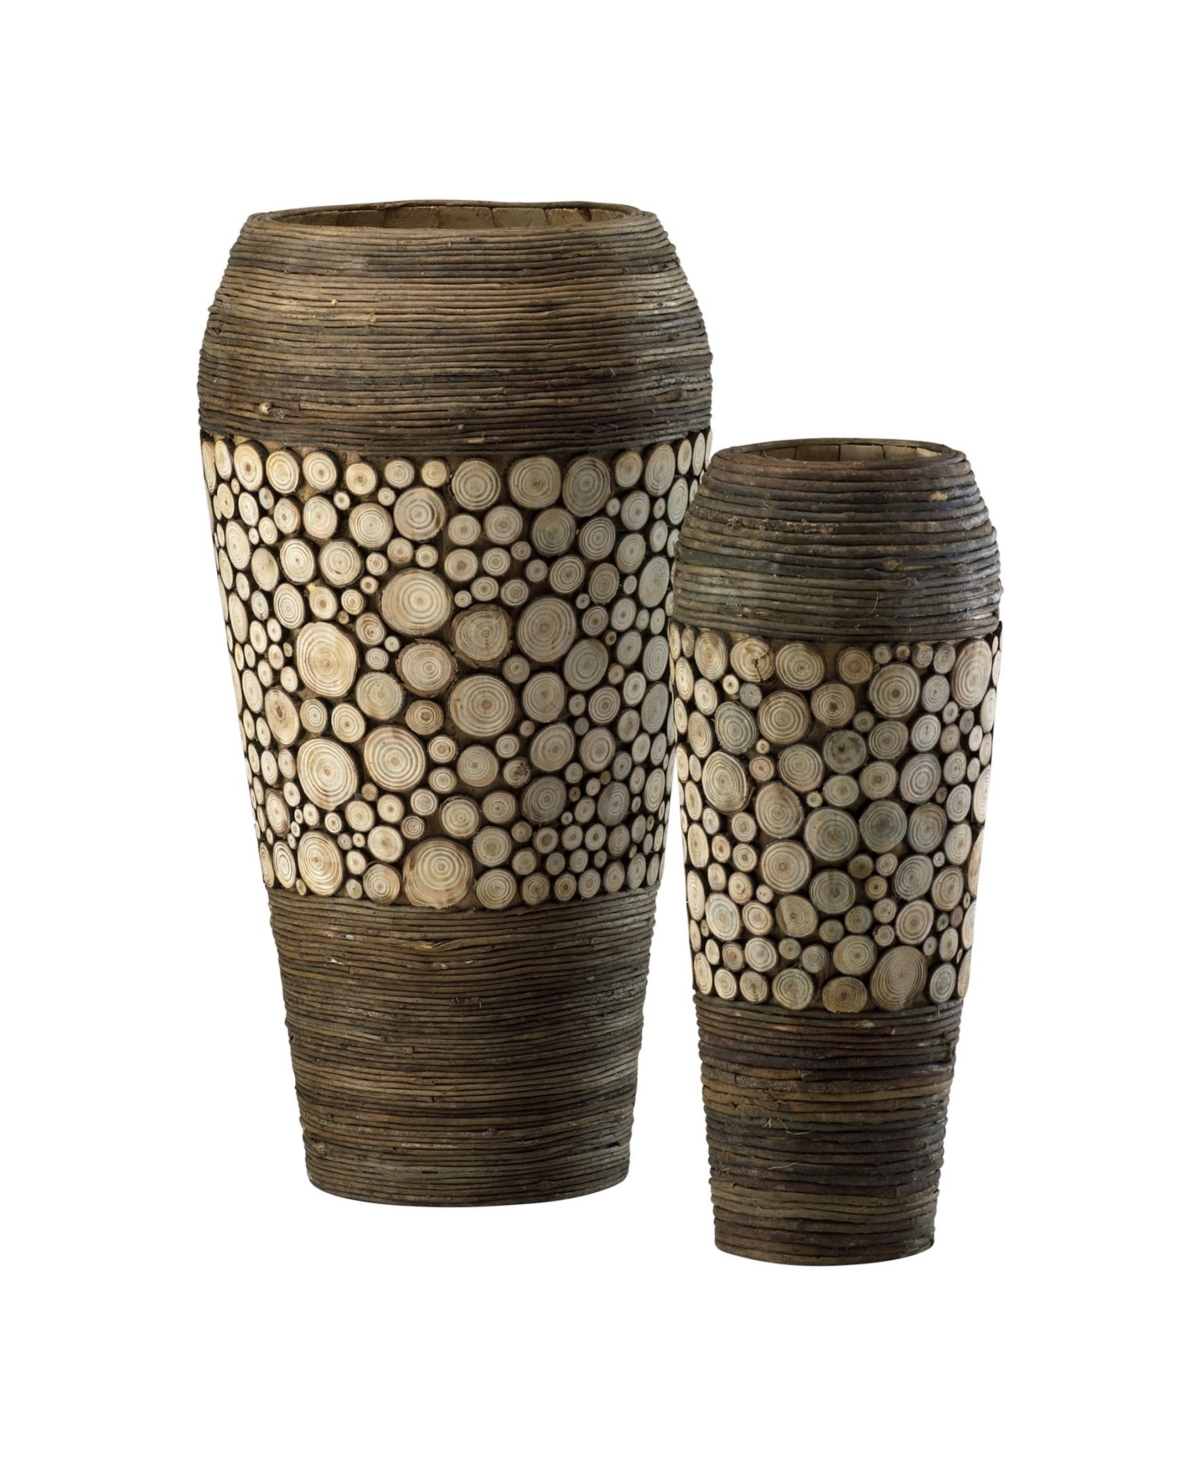 Cyan Design Wood Slice Oblong Vases, Set of 2